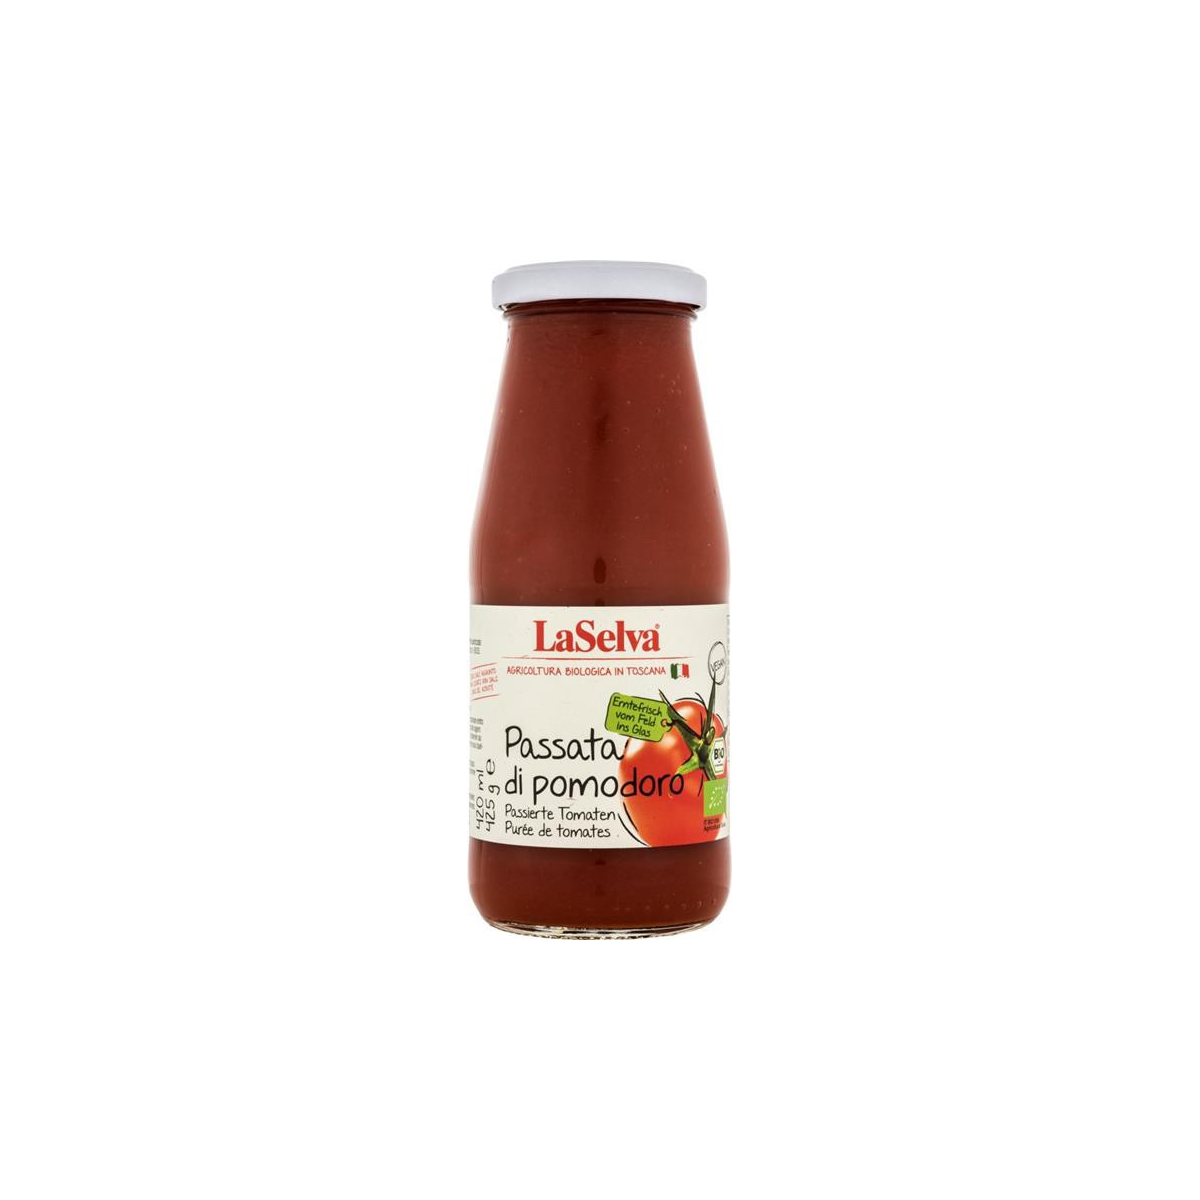 LaSelva - Passata di pomodoro - passierte Tomaten